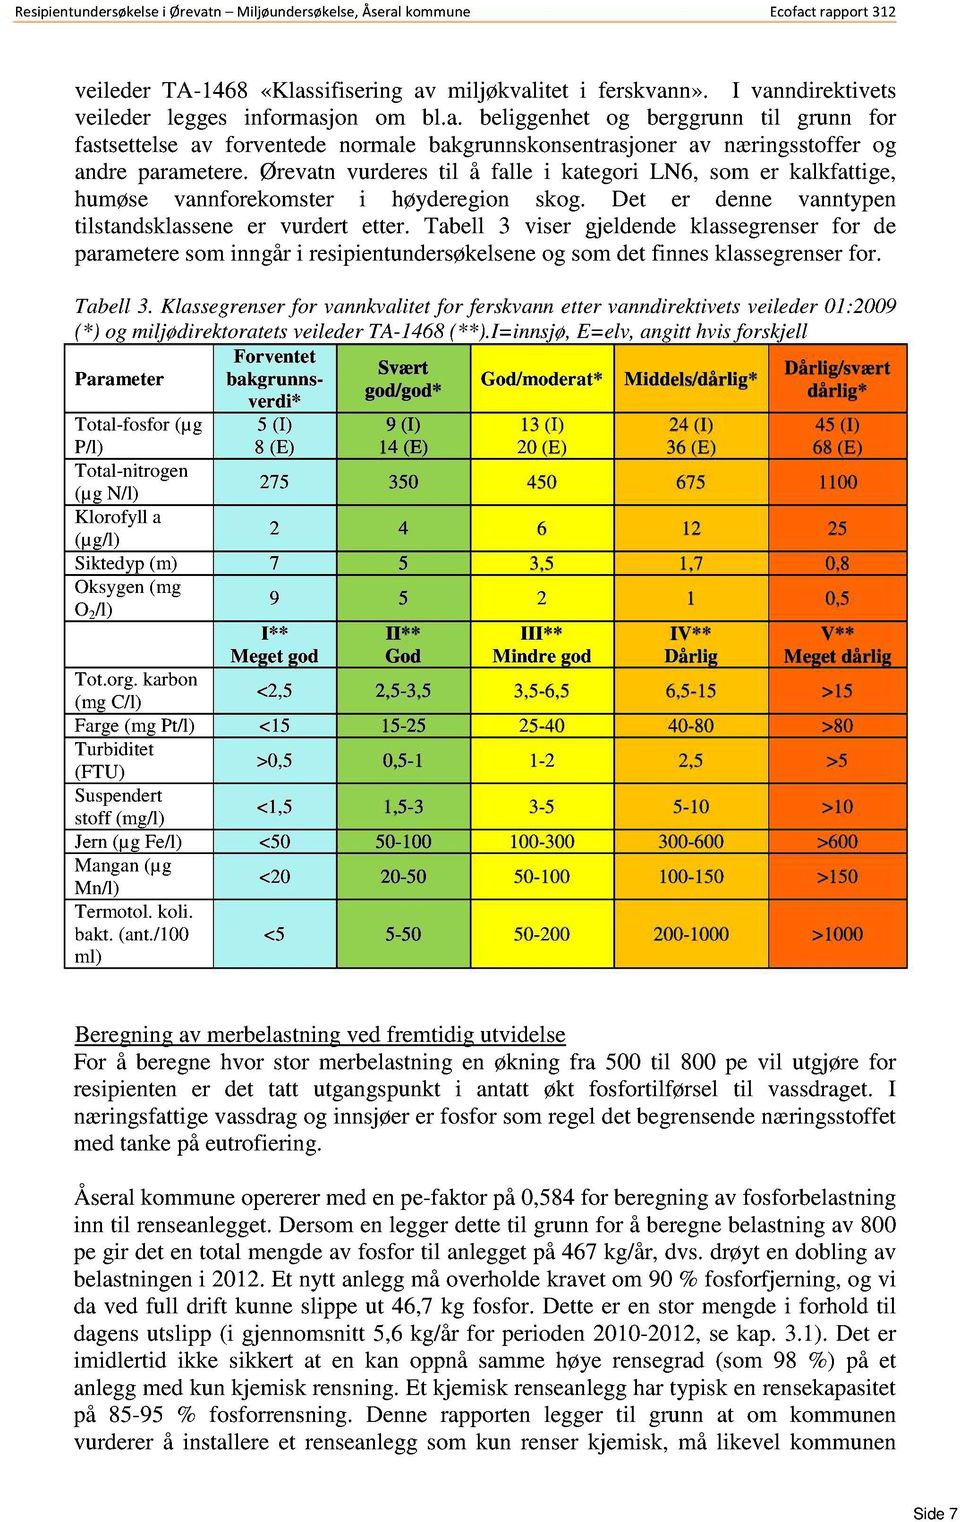 Tabell 3 viser gjeldende klassegrenserfor de parameteresominngåri resipientundersøkelsene og somdetfinnesklassegrenser for. Tabell 3.